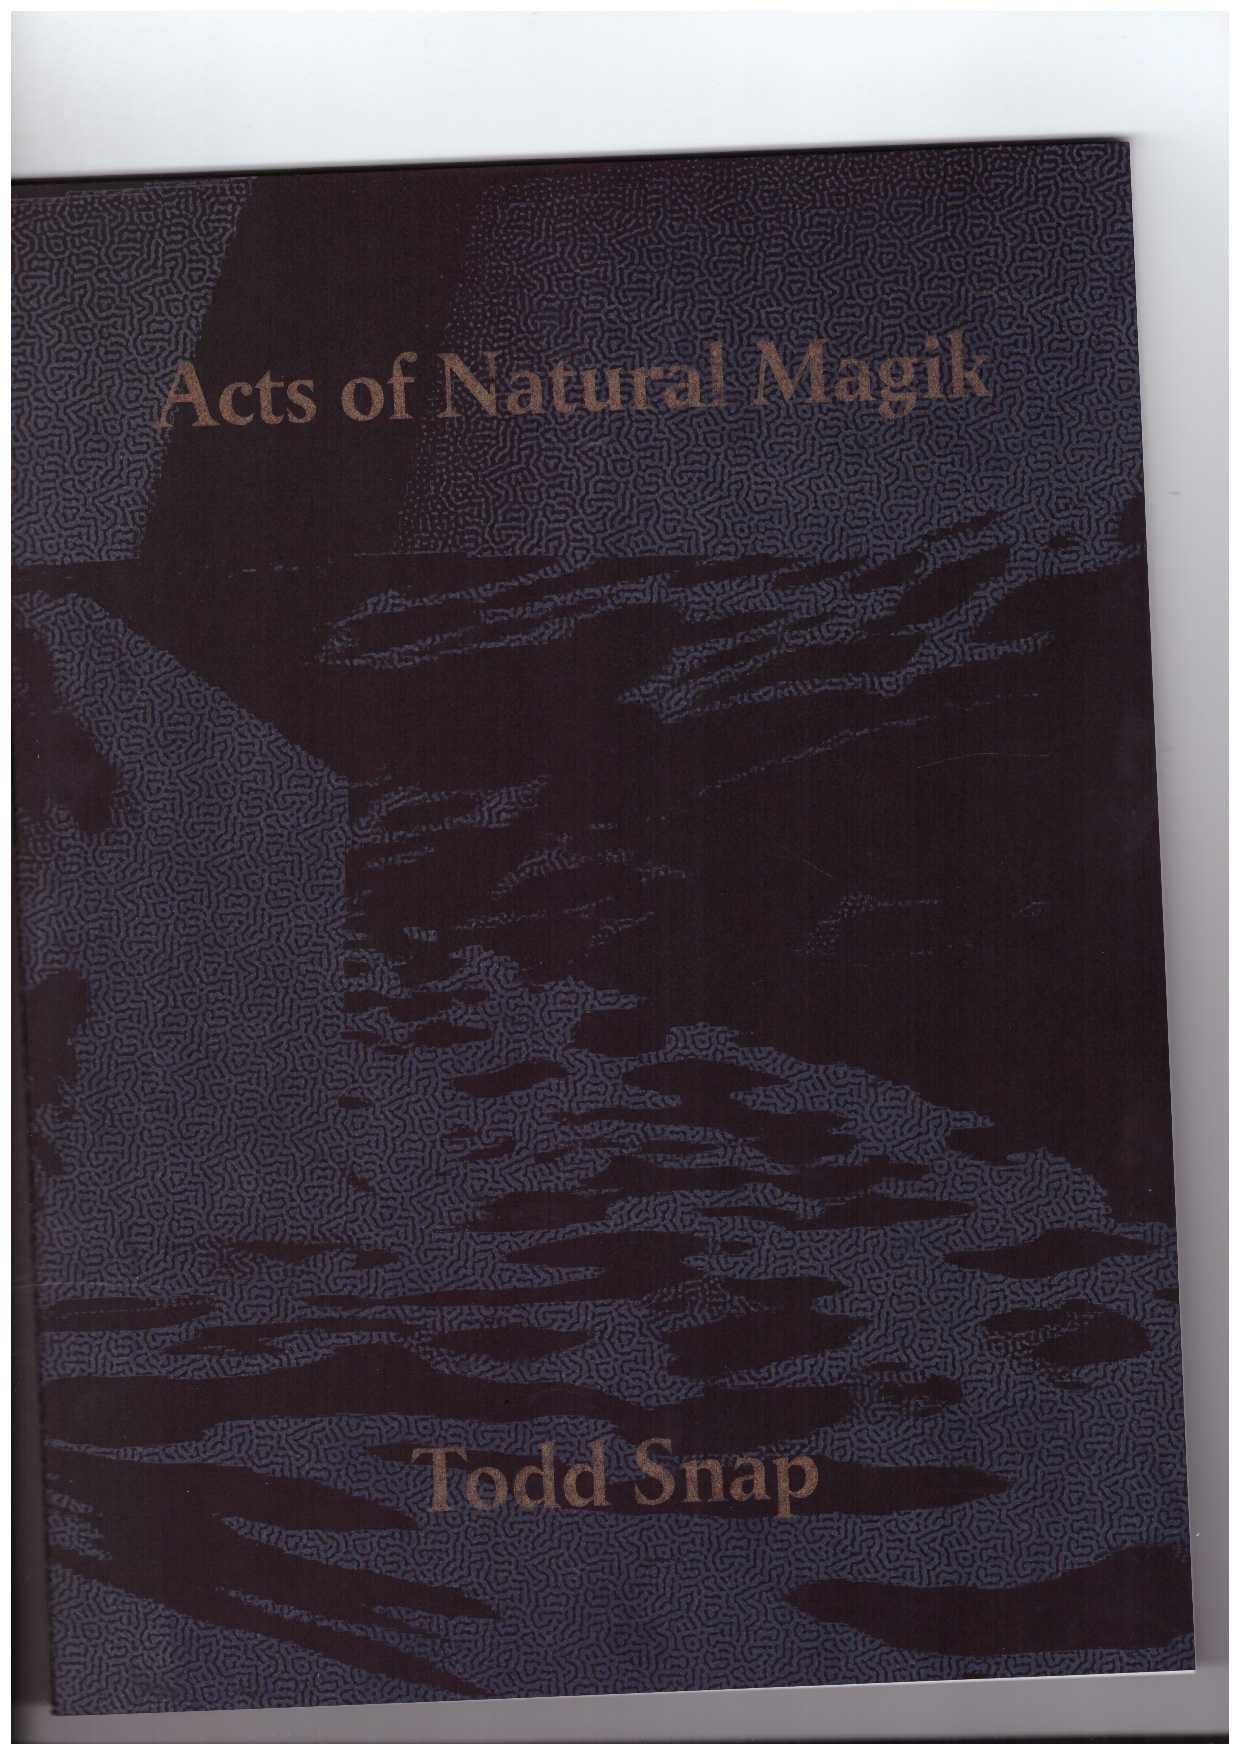 SNAP, Todd  - Acts of Natural Magik